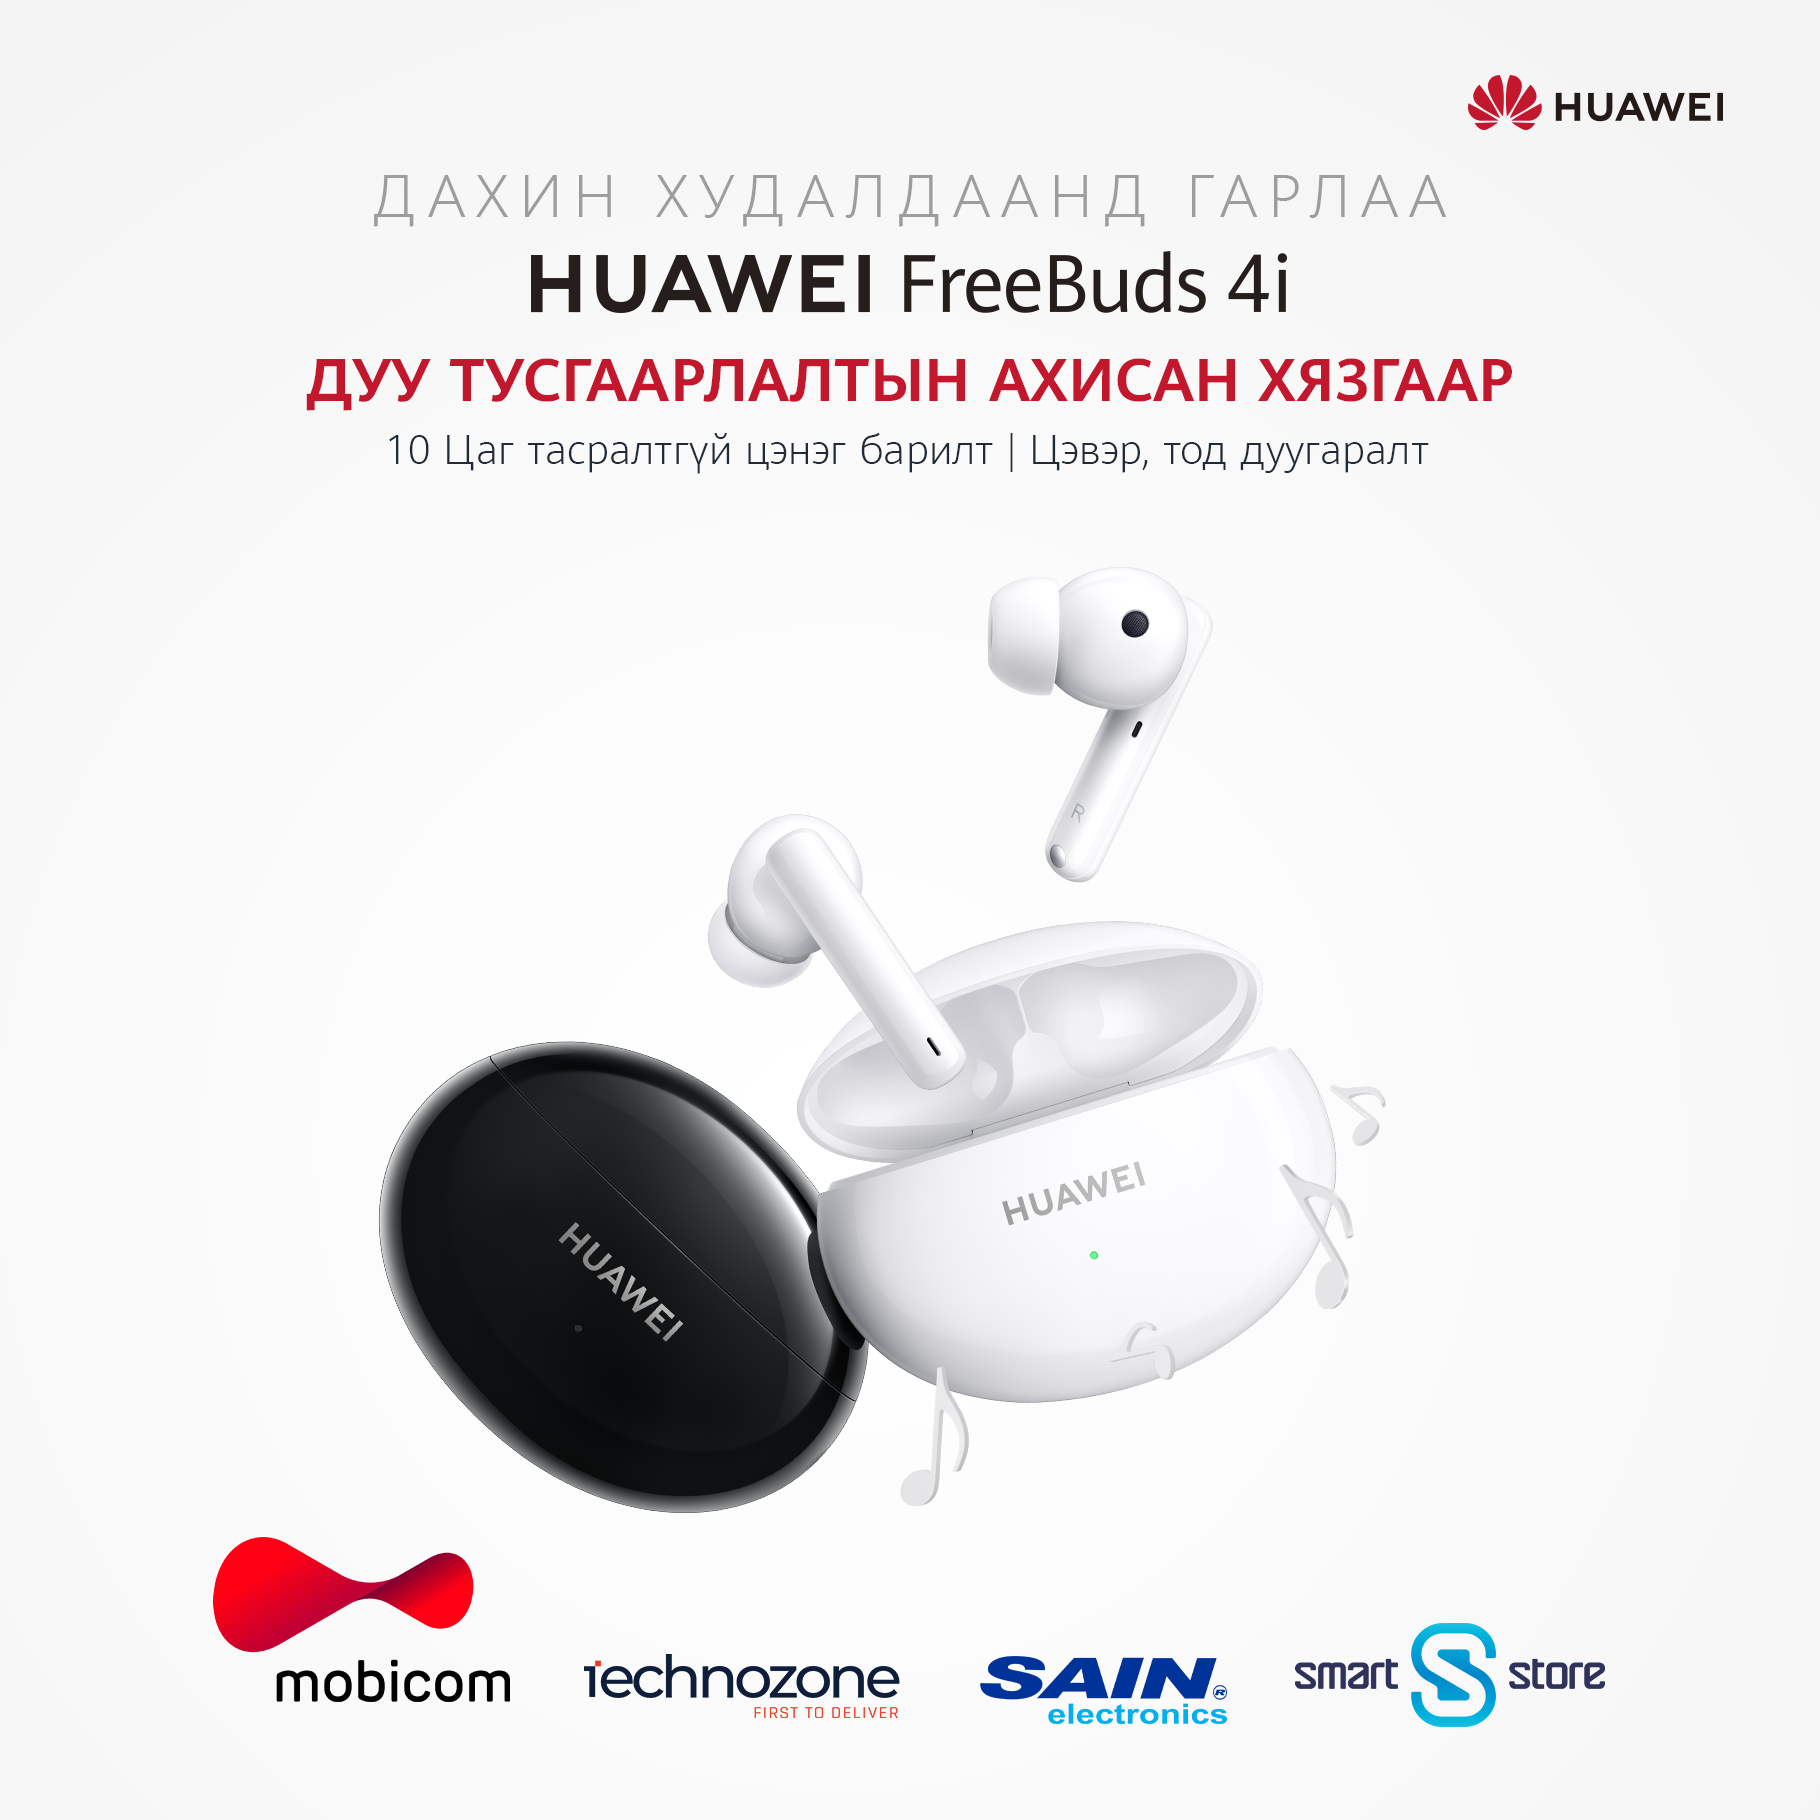 Huawei Freebuds 4I: Минимал дизайн, ухаалаг дуу тусгаарлагч бүхий утасгүй чихэвч (фото 1)